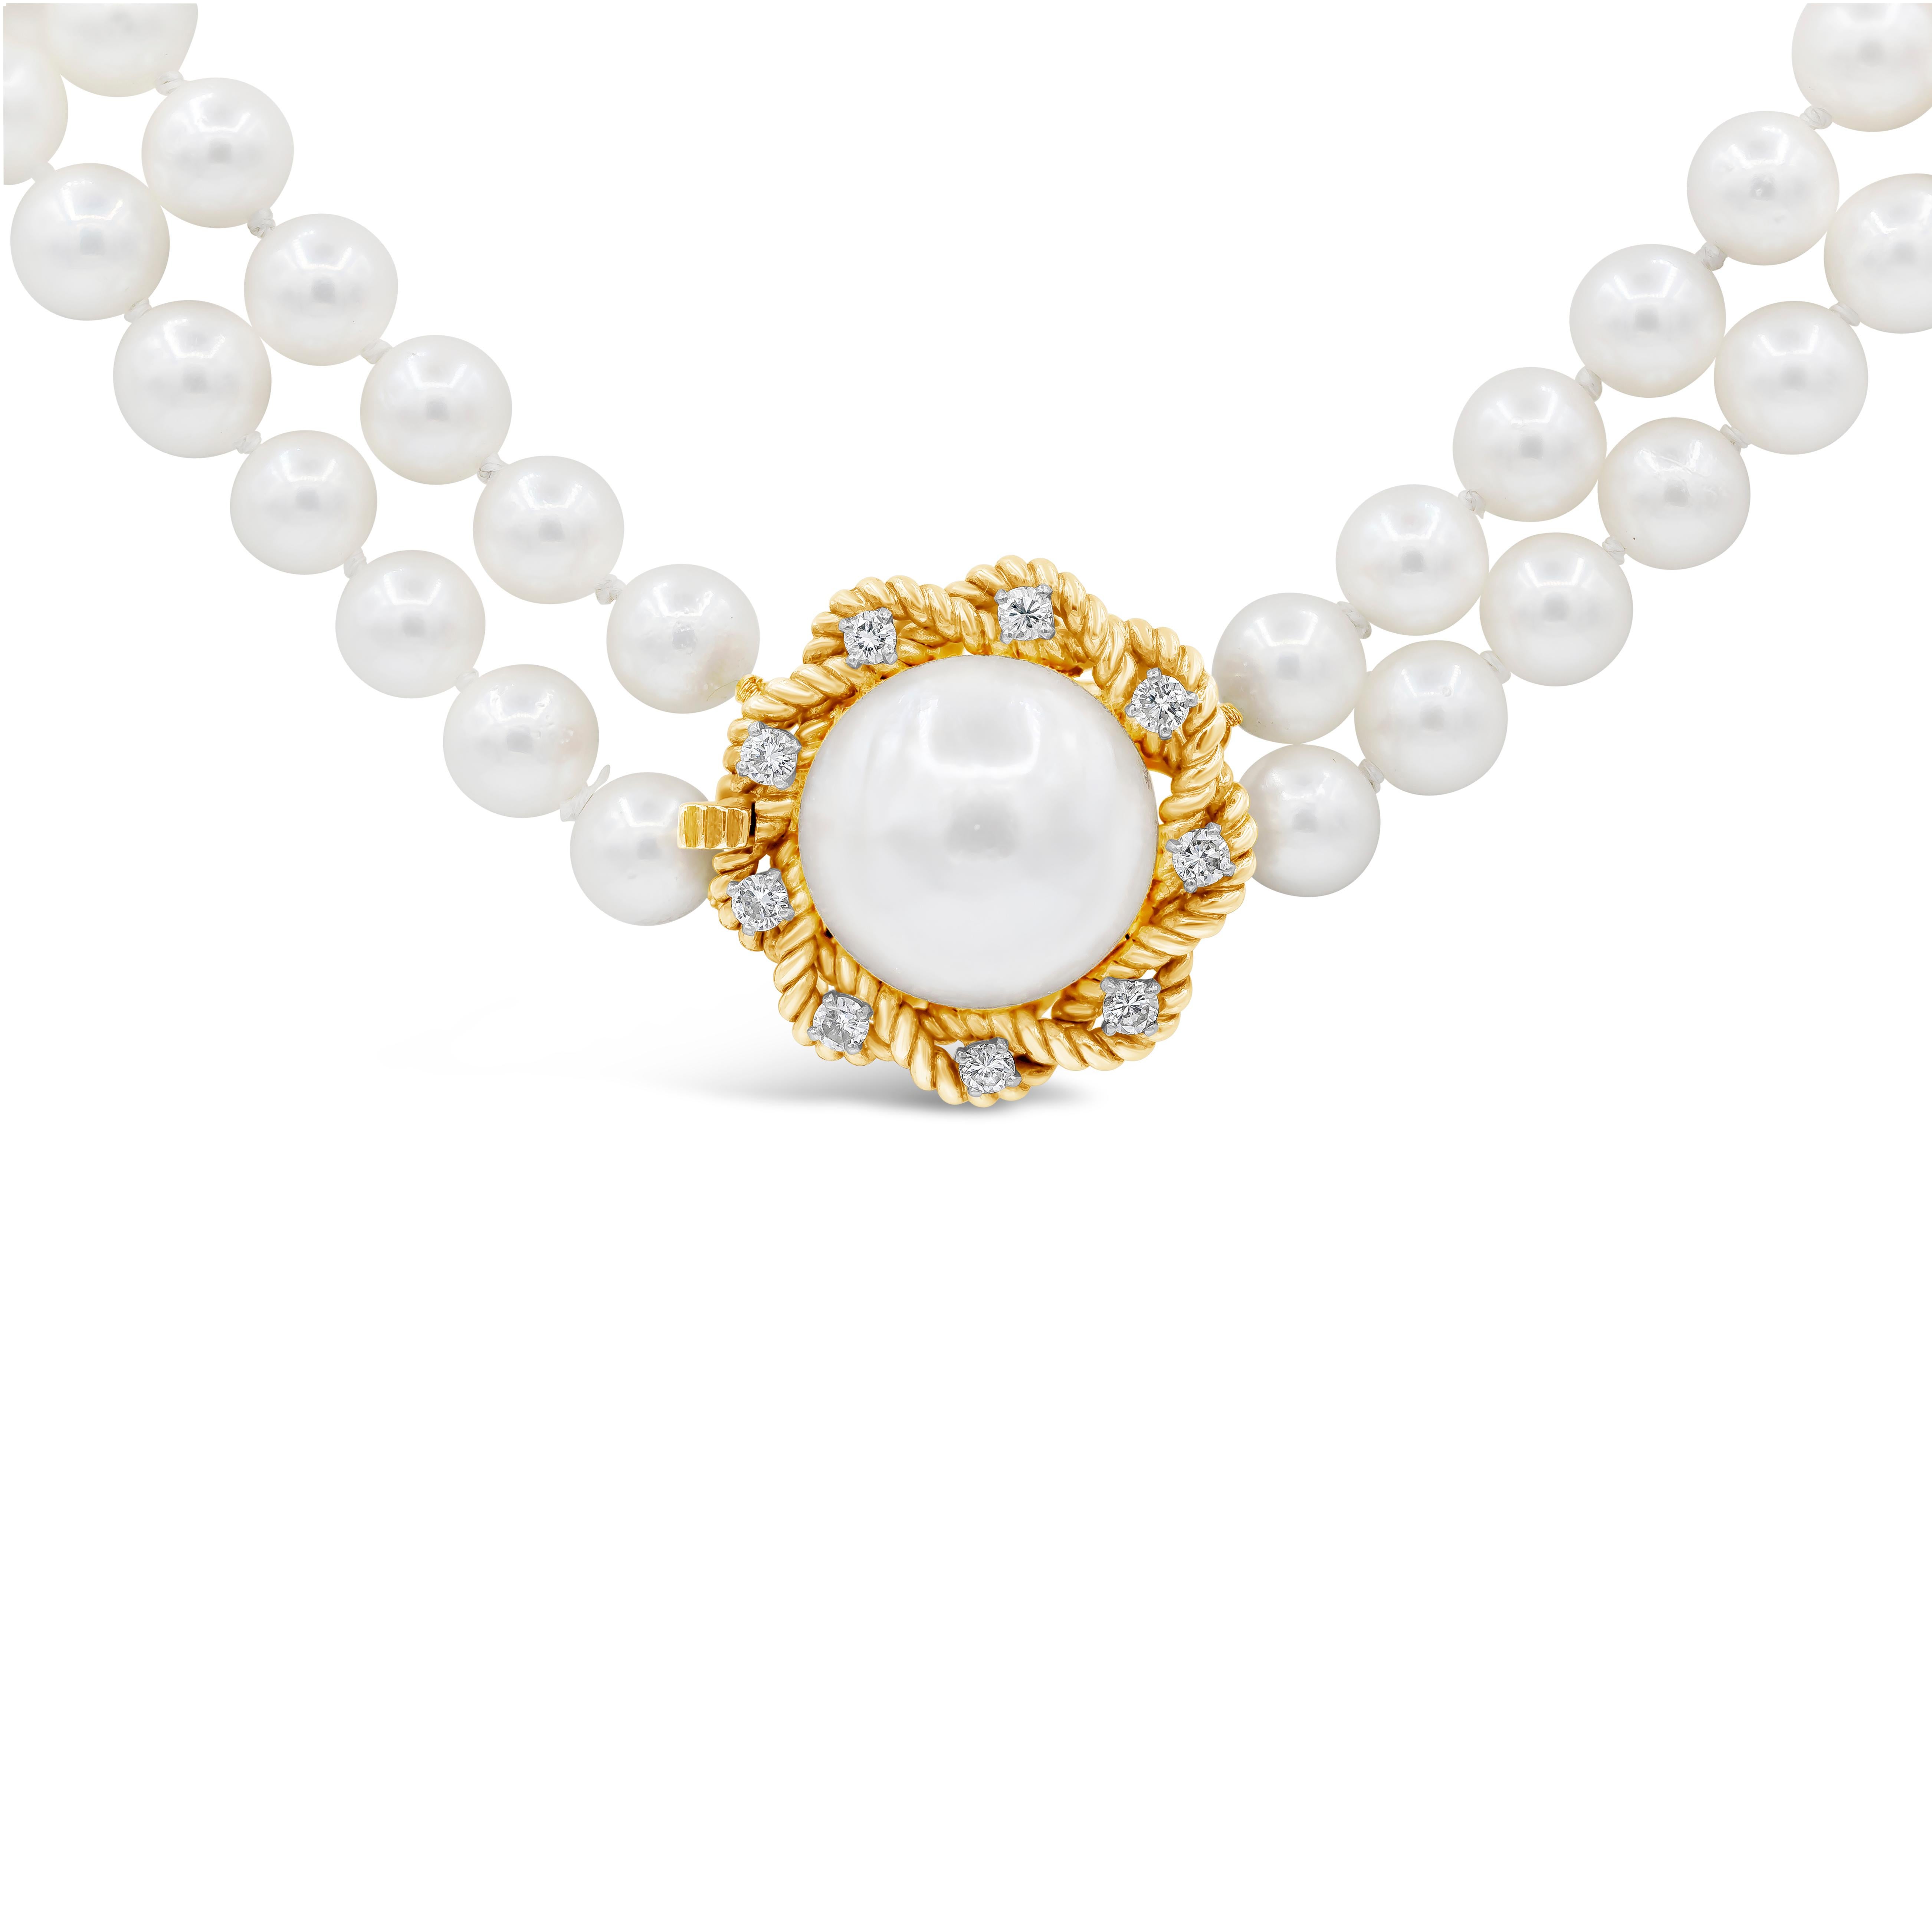 Collier chic de perles et de diamants mettant en valeur une grosse perle sertie d'un cordon de tissage rehaussé de diamants ronds brillants de 0,40 carat au total. Attaché à deux beaux rangs de perles et réalisé en or jaune 18 carats.